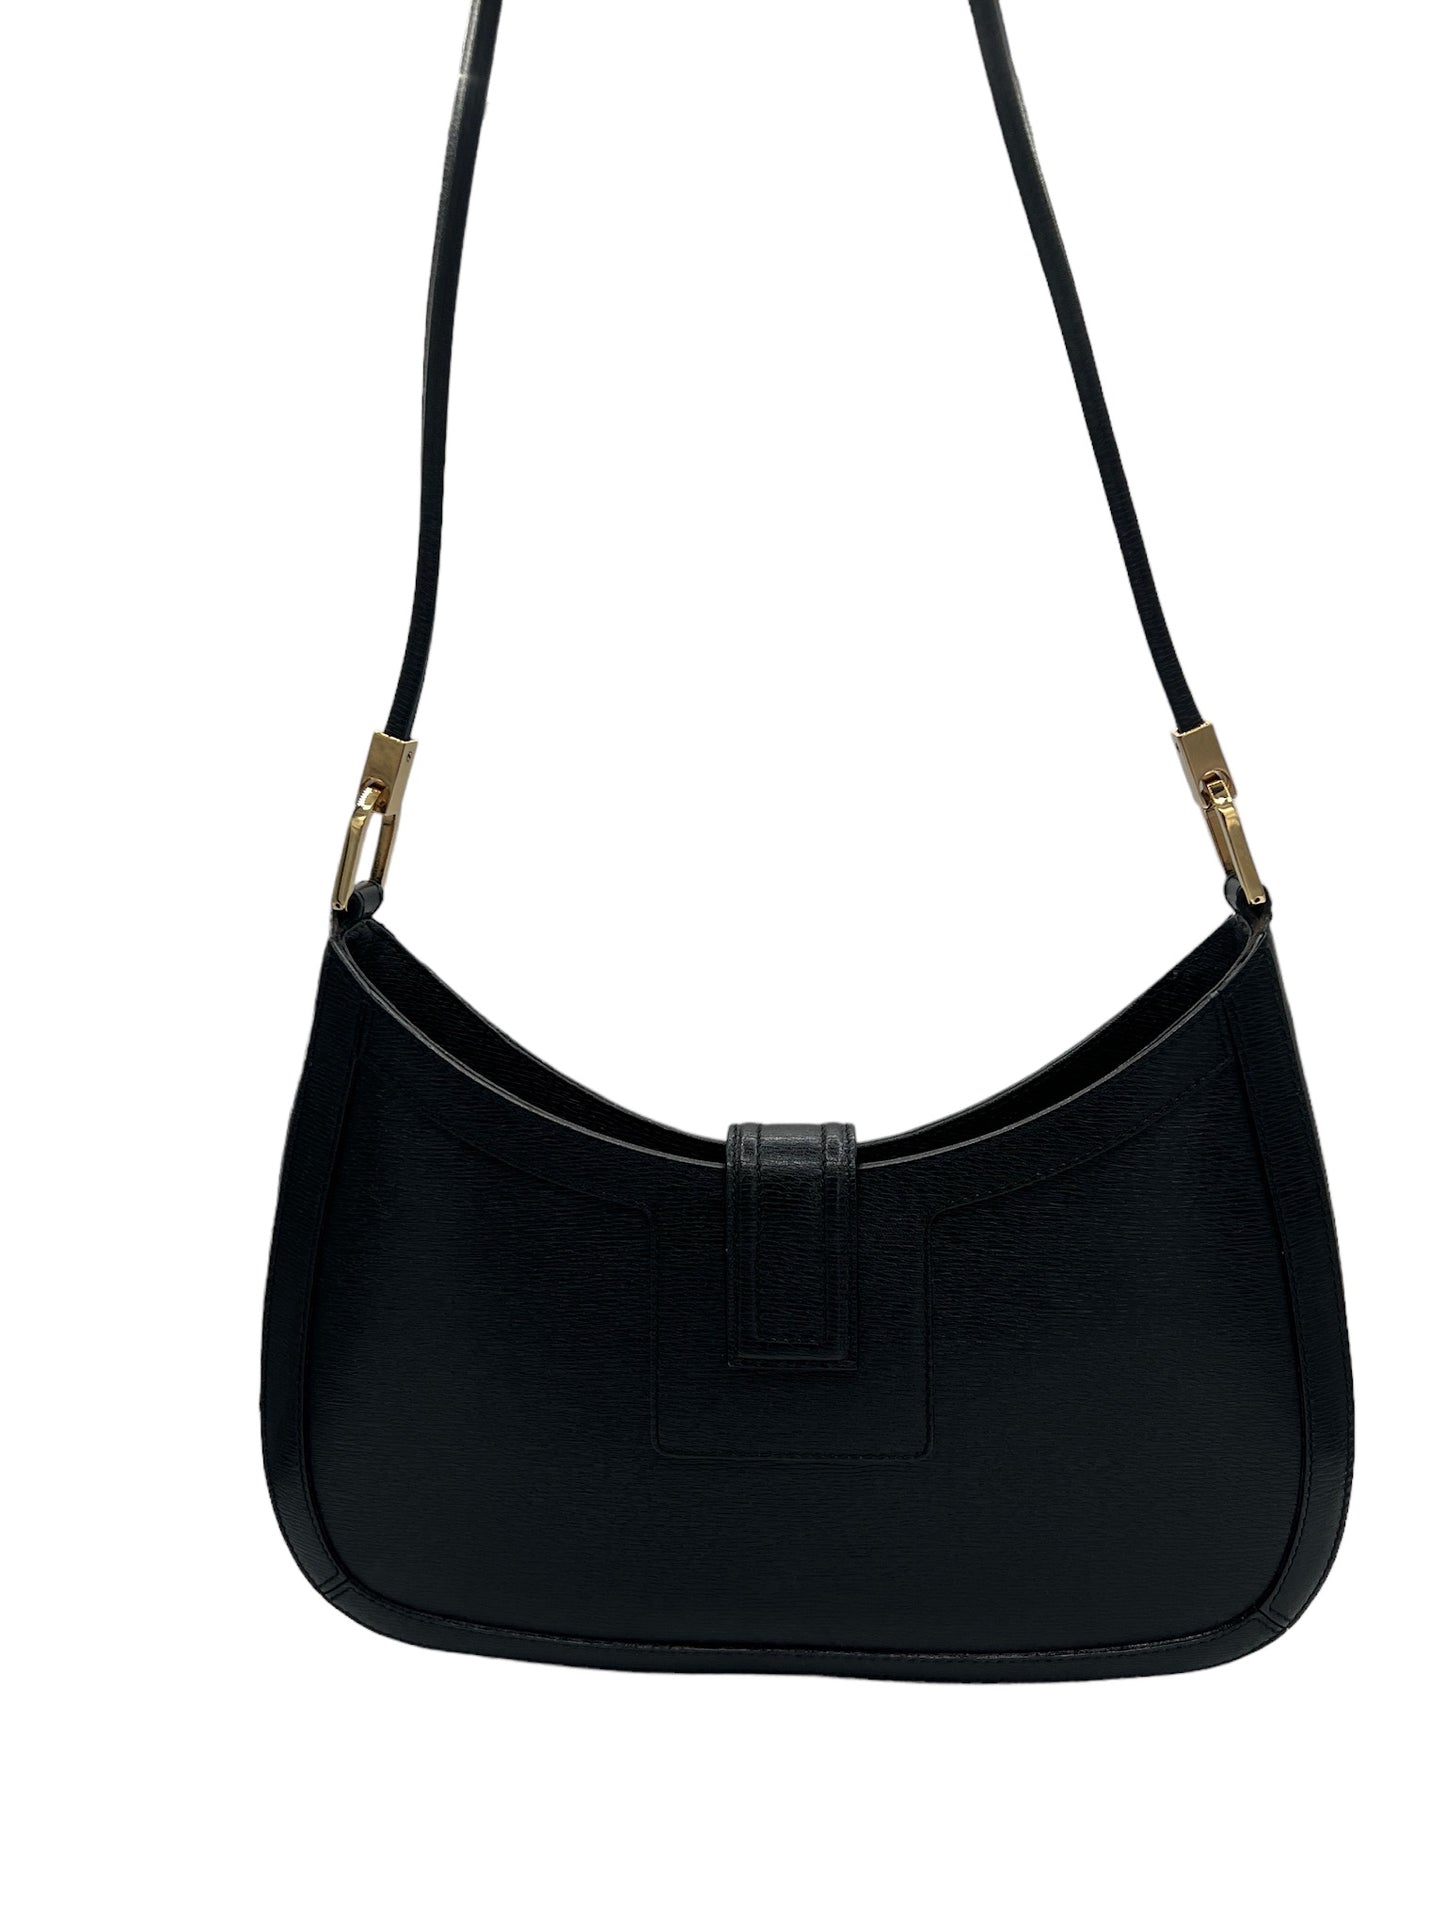 GUCCI - Black Leather Shoulder Bag